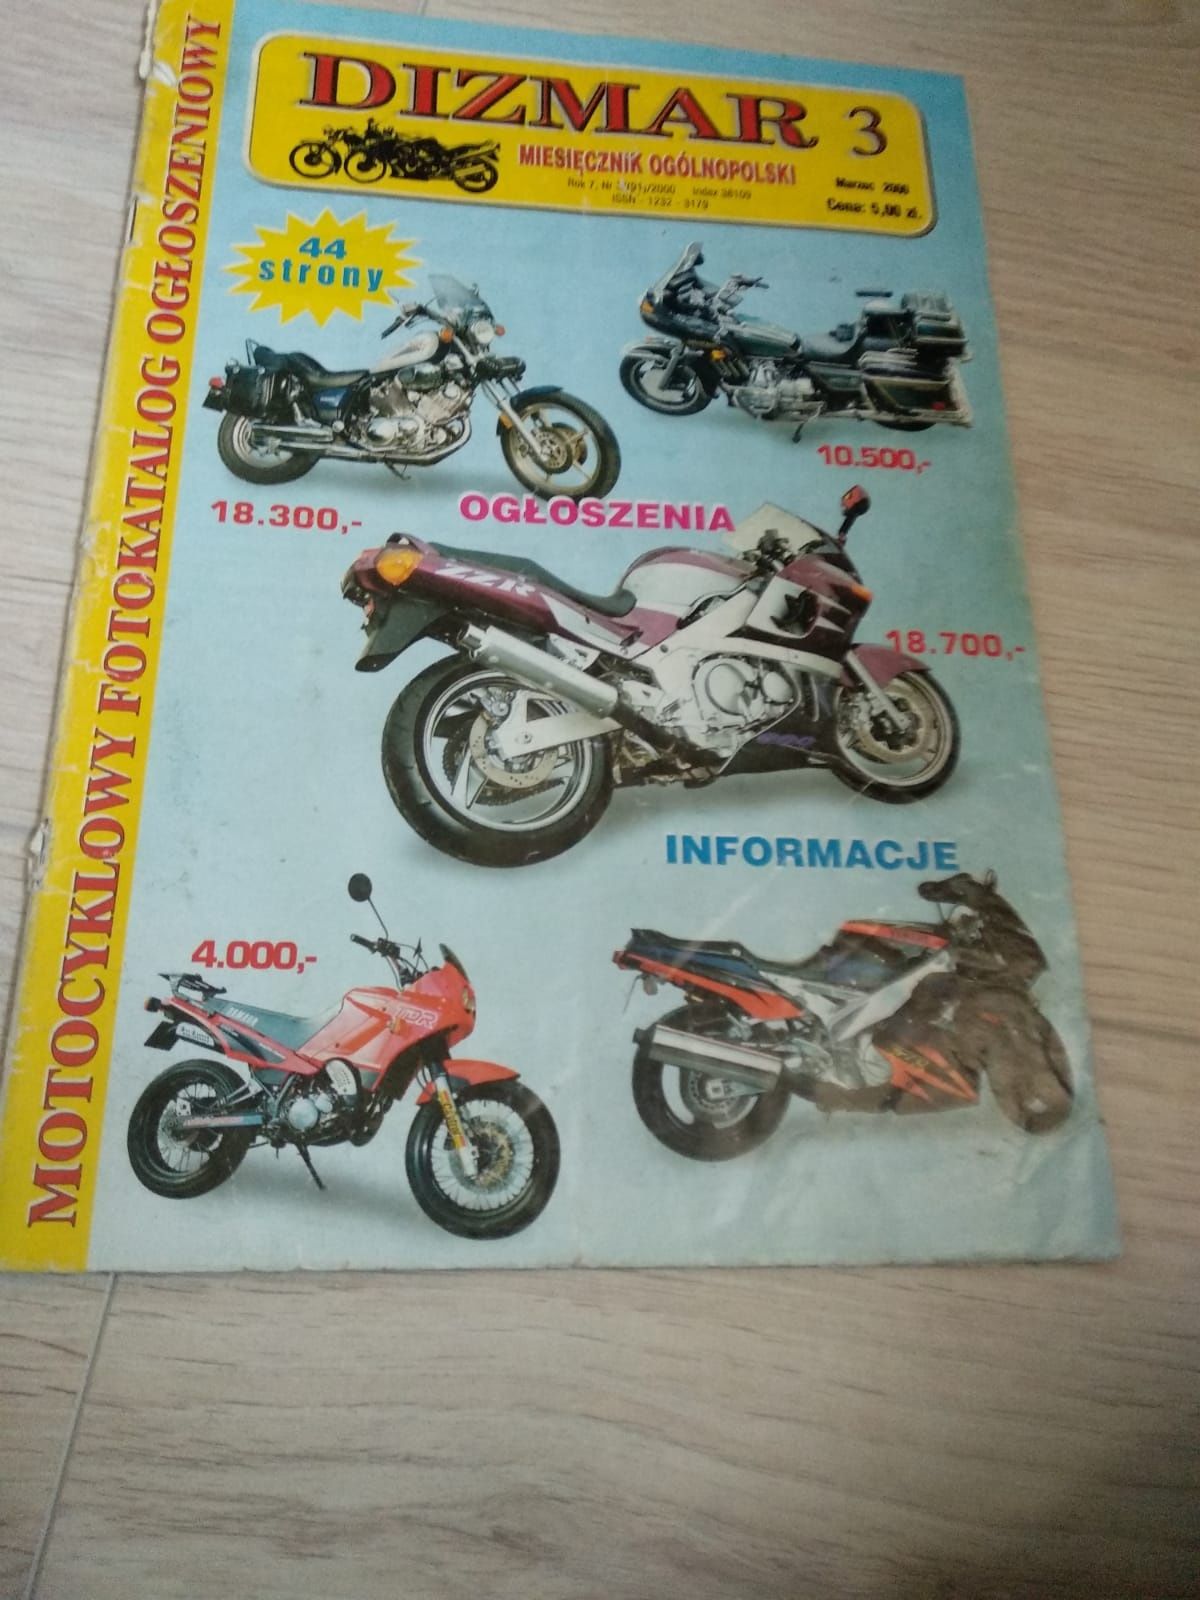 Gazeta, pismo, czasopismo, magazyn motocyklowy Dizmar 3 marzec 2000